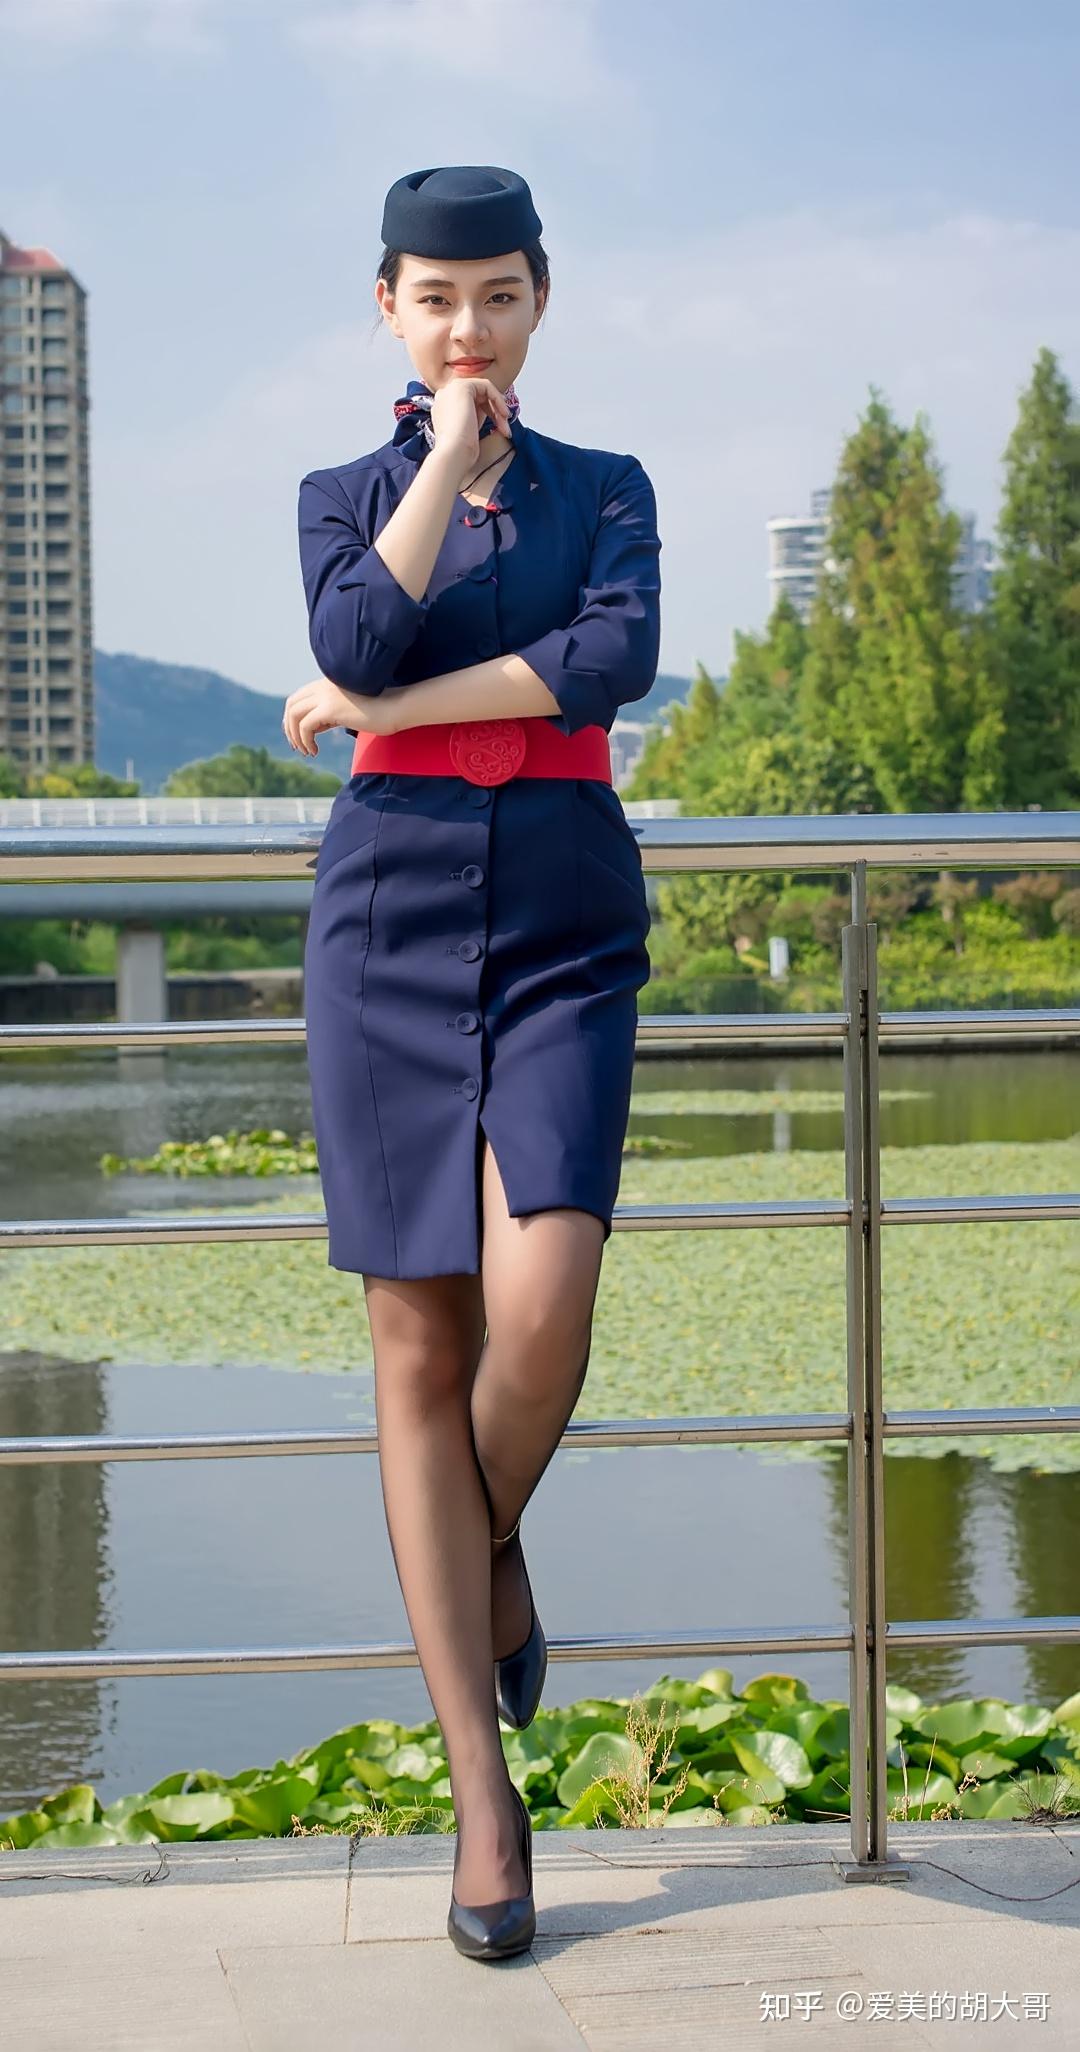 美女写真,蓝色空姐制服搭性感黑丝,长腿媲美杨幂,女人